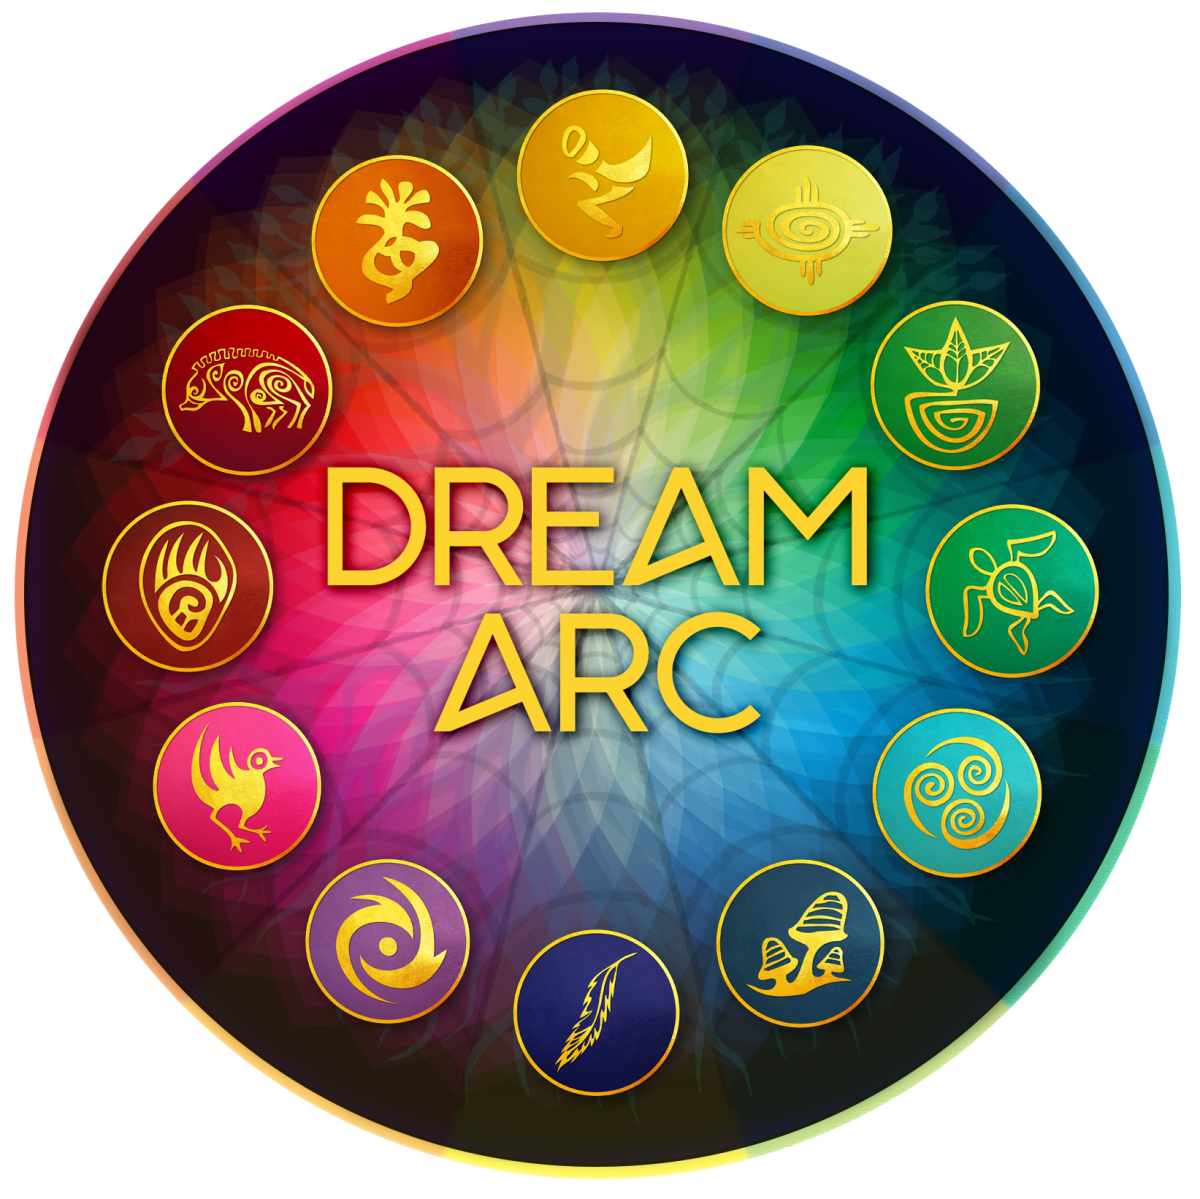 Dream Arc - deutsche Austauschgruppe